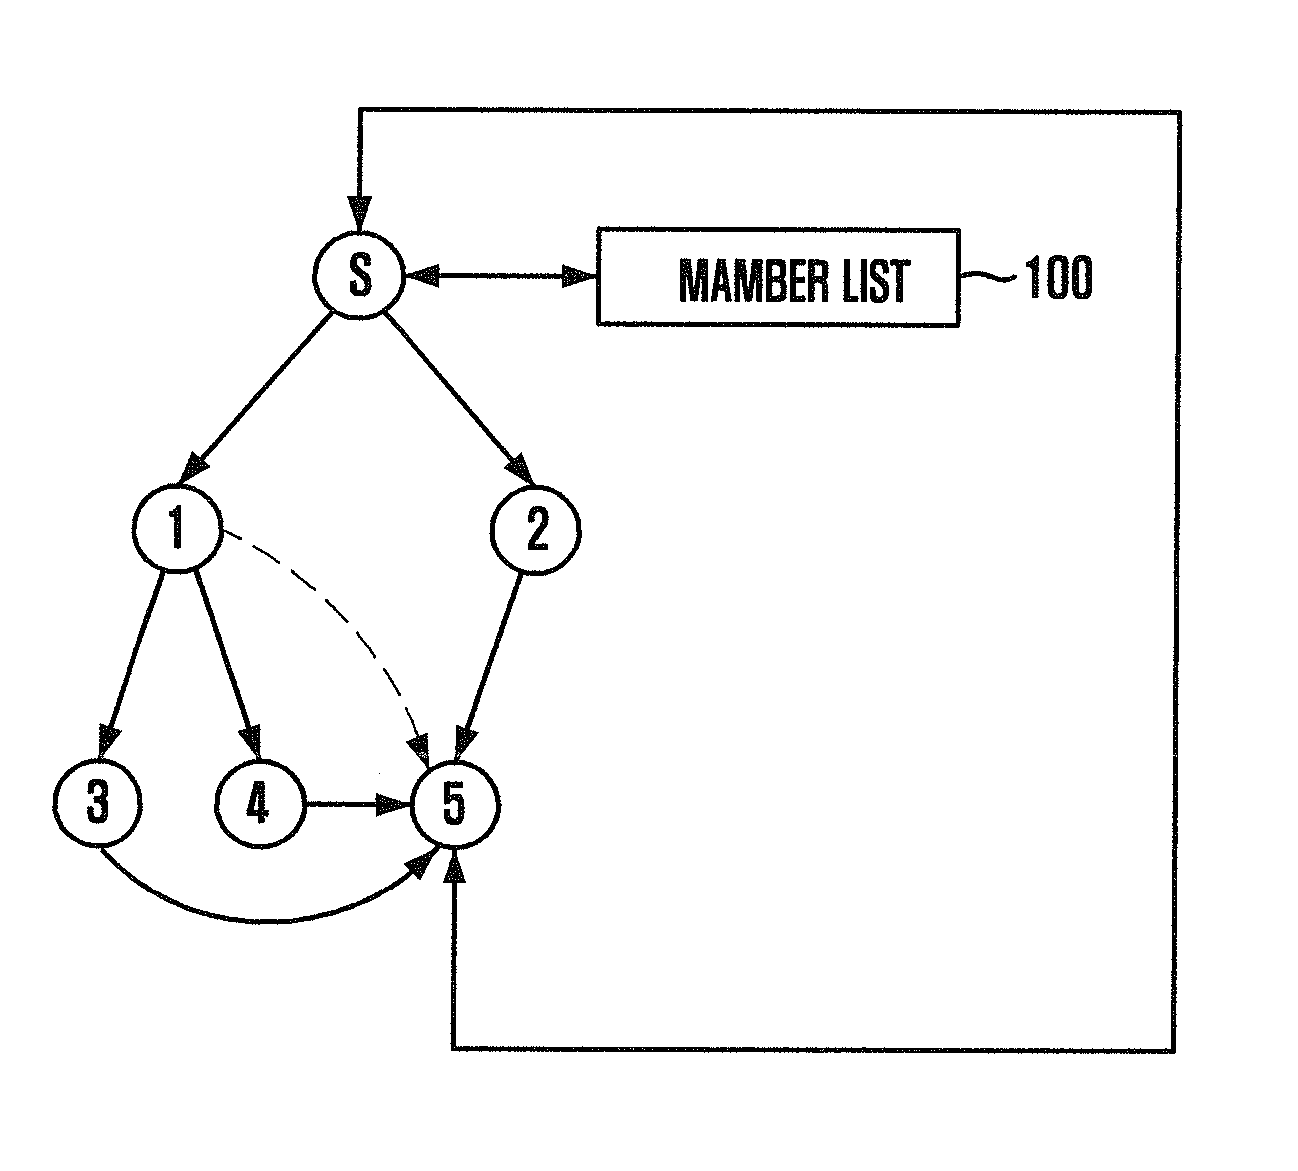 Method for Transmitting File Based on Multiplex Forwarder